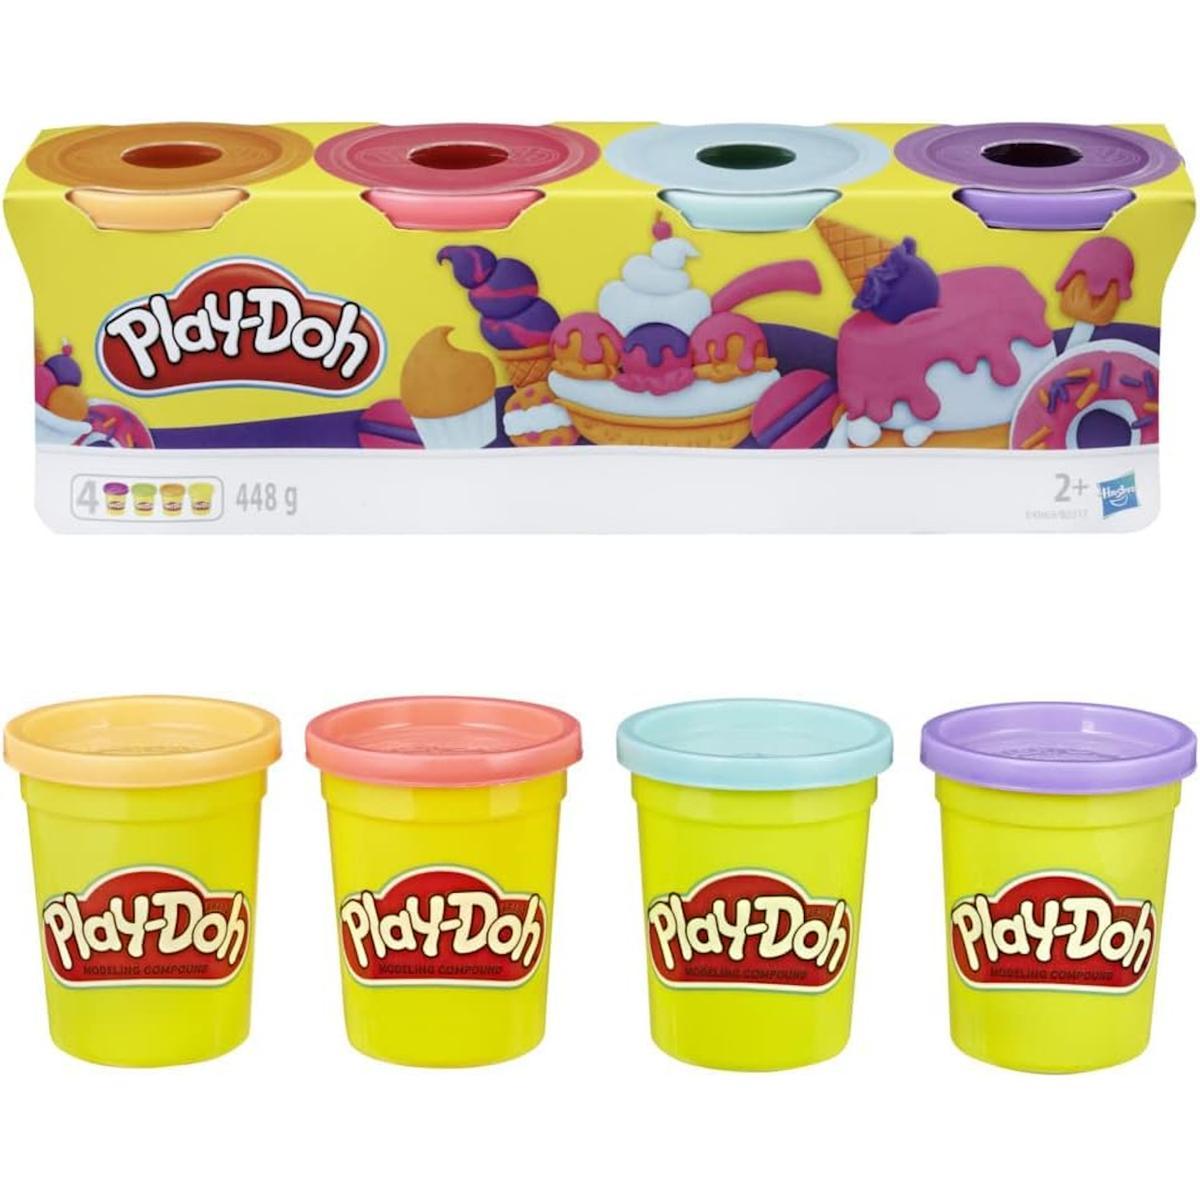 Ciastolina kolorowa zestaw tub mix kolorów hasbro 4-pak e4869 play-doh dla dziecka nr. 1